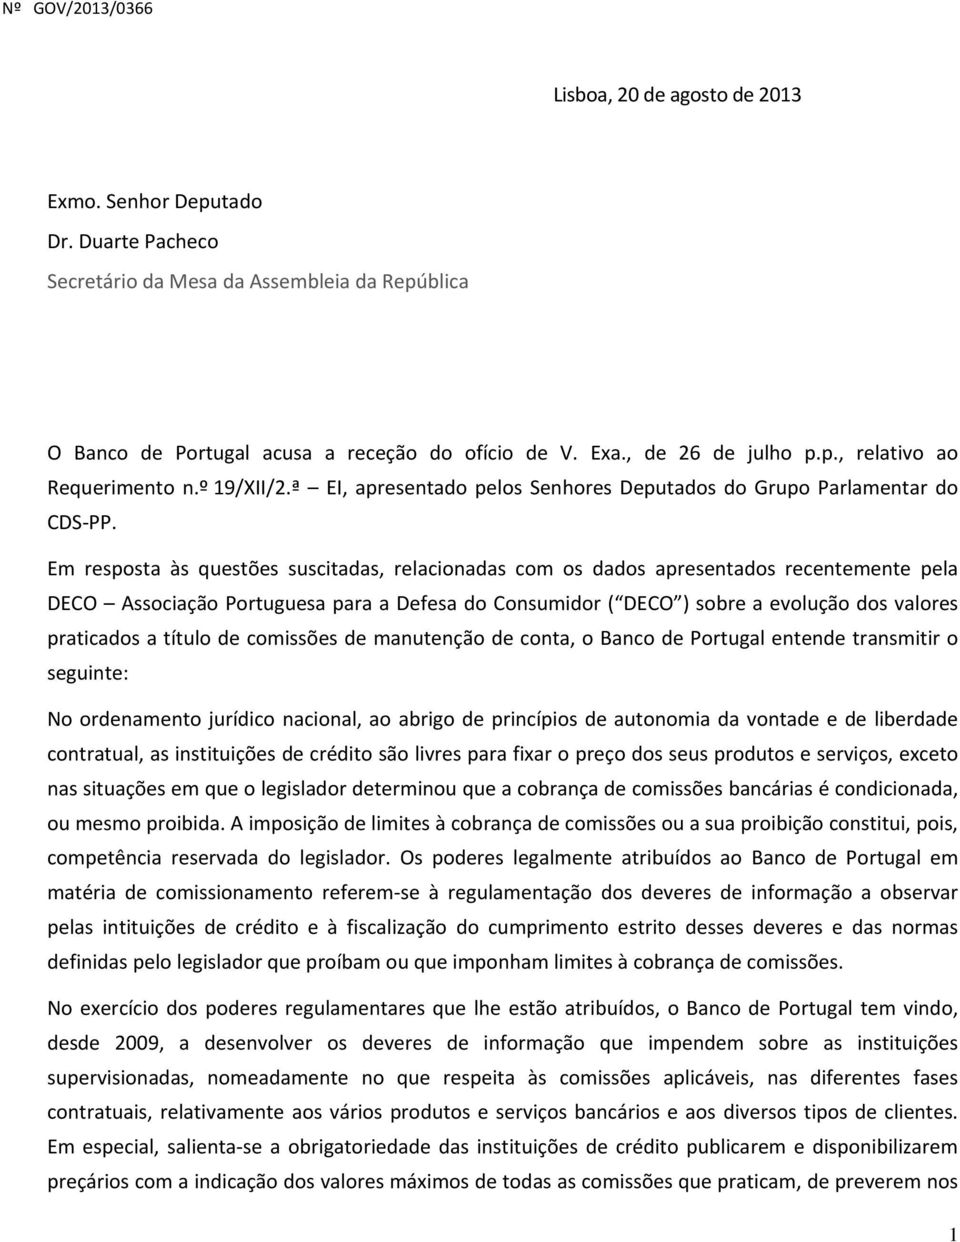 Em resposta às questões suscitadas, relacionadas com os dados apresentados recentemente pela DECO Associação Portuguesa para a Defesa do Consumidor ( DECO ) sobre a evolução dos valores praticados a